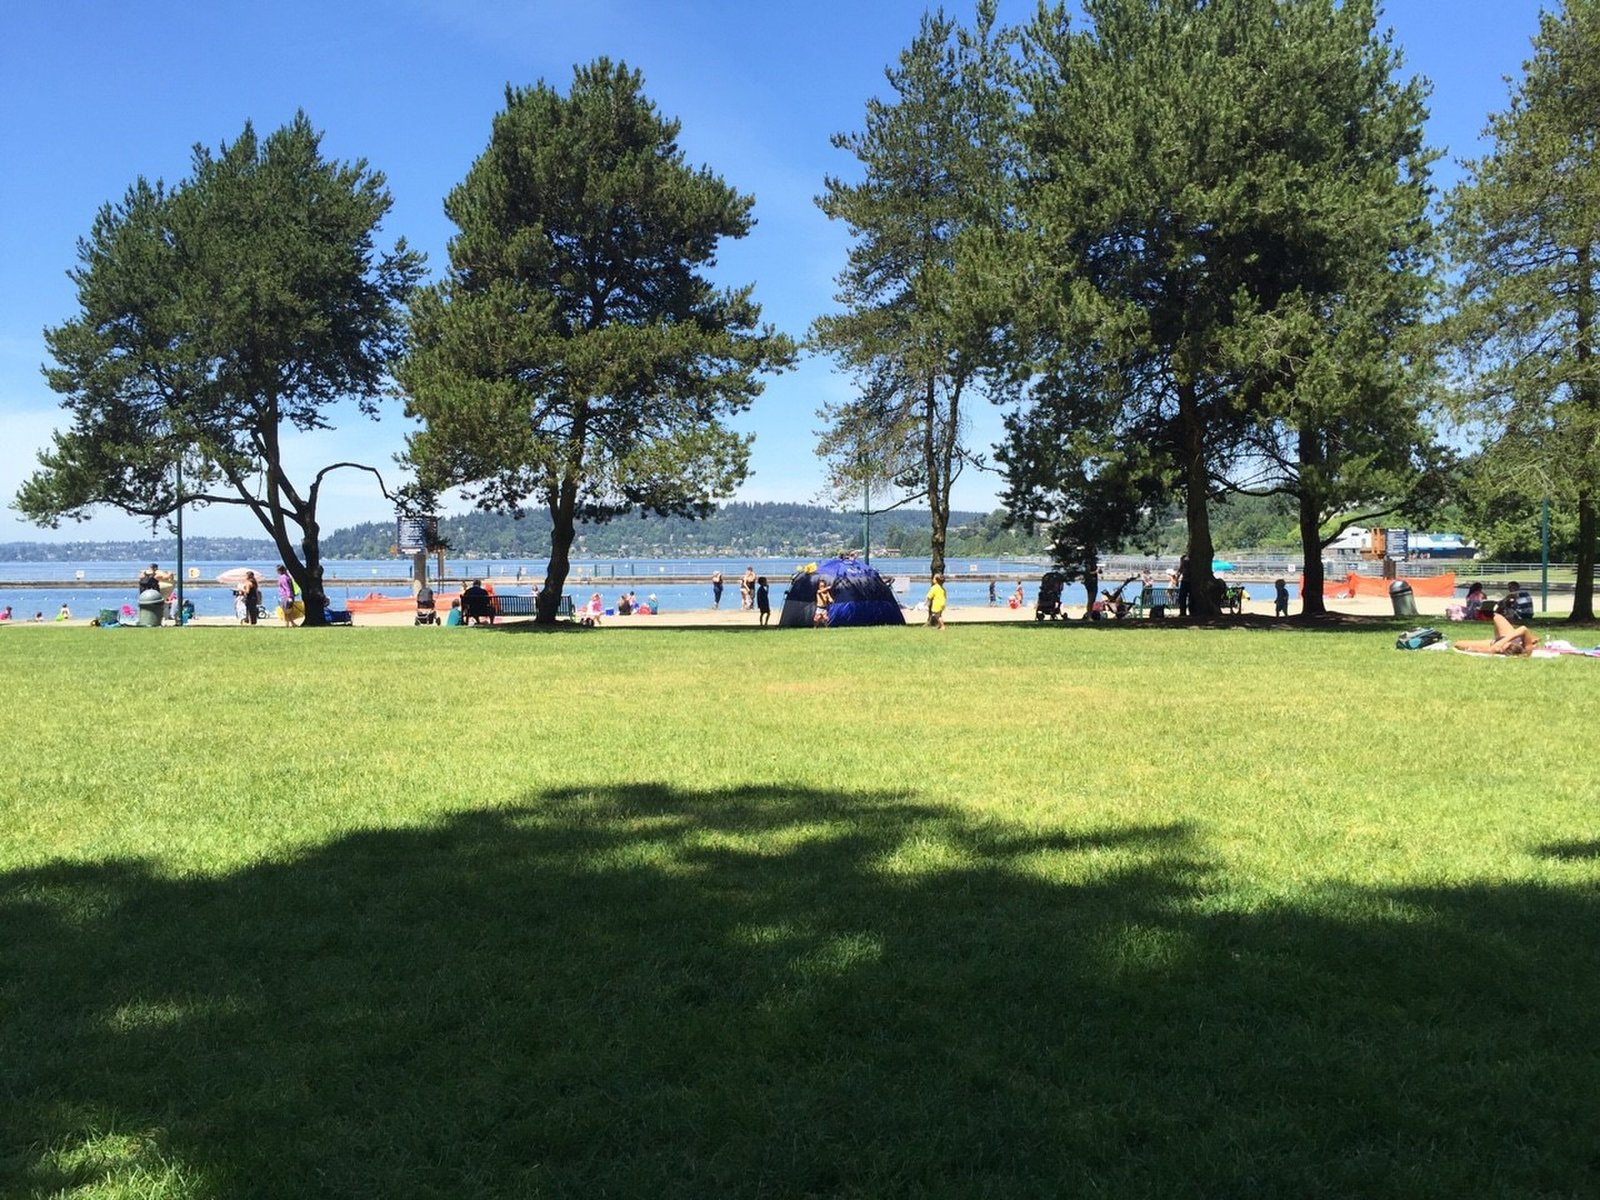 ピザ ピクニックデート コスパよし 夏は湖を眺めながらのんびりまったりピクニックデートがおすすめ Playlife プレイライフ